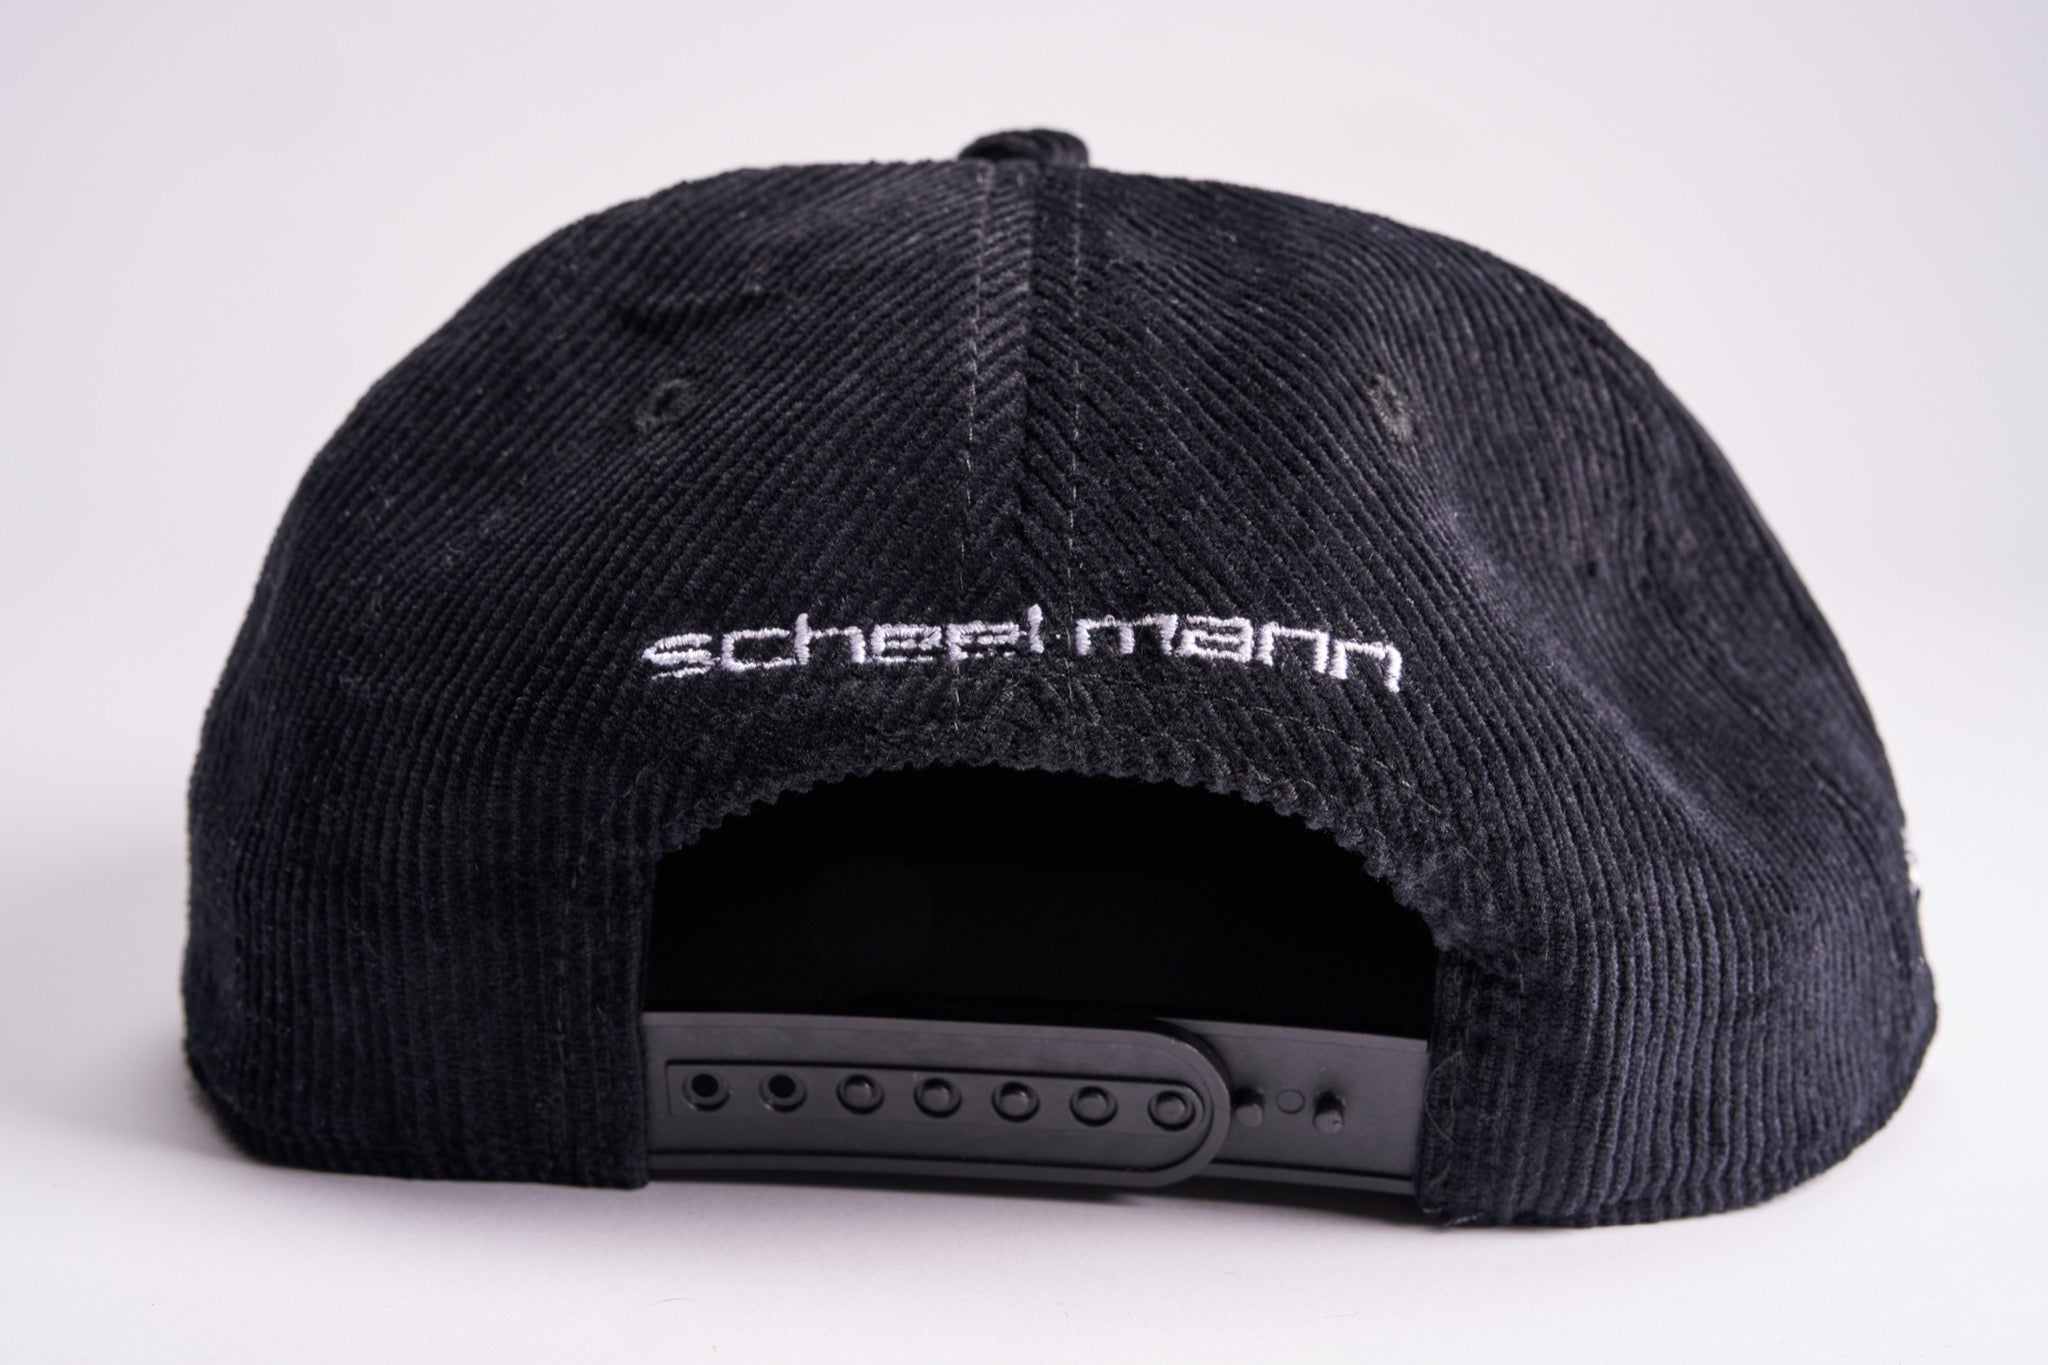 Unstructured Corduroy Hat - Limited Edition scheel-mann x Overcrest Rally